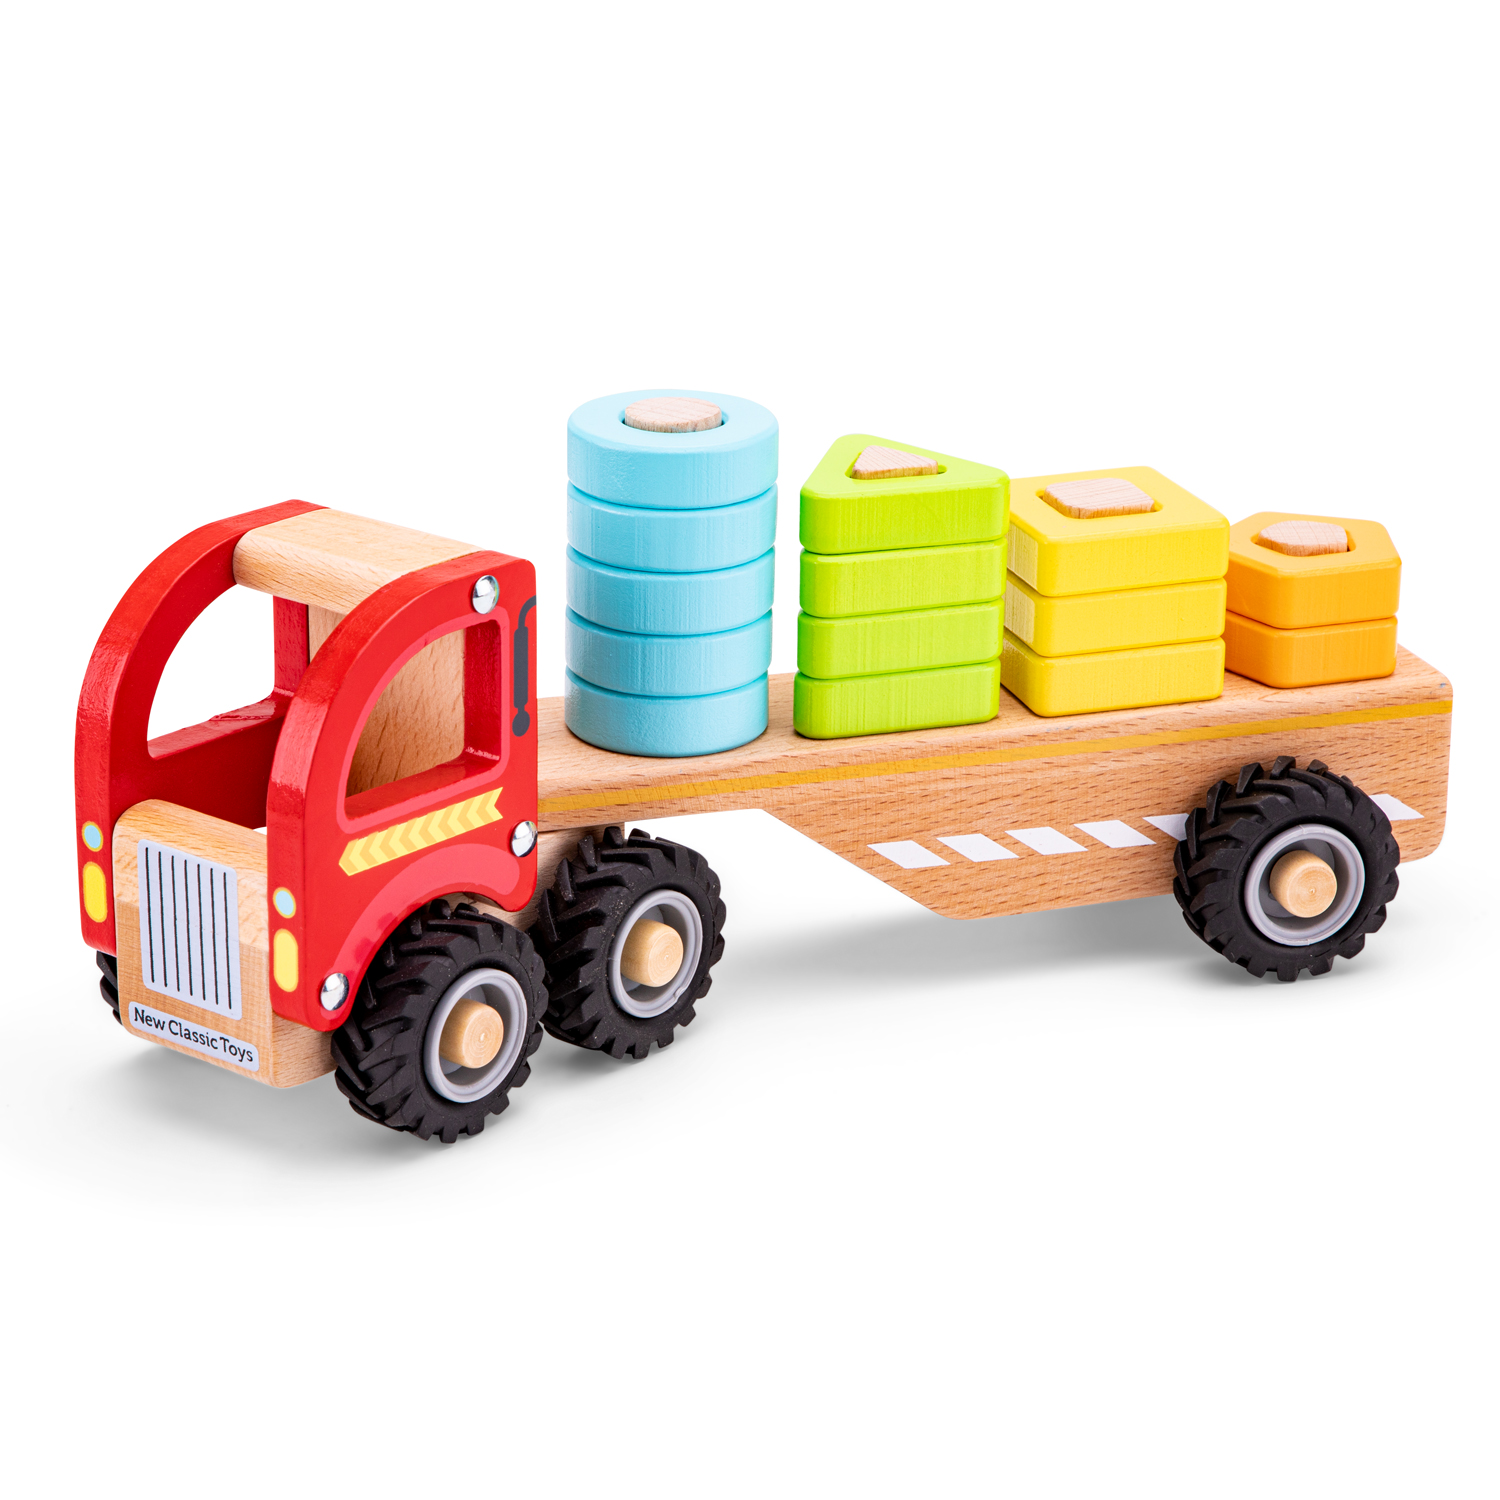 Autotransporter mit Steckformen Abschleppwagen u Steckfiguren aus Holz